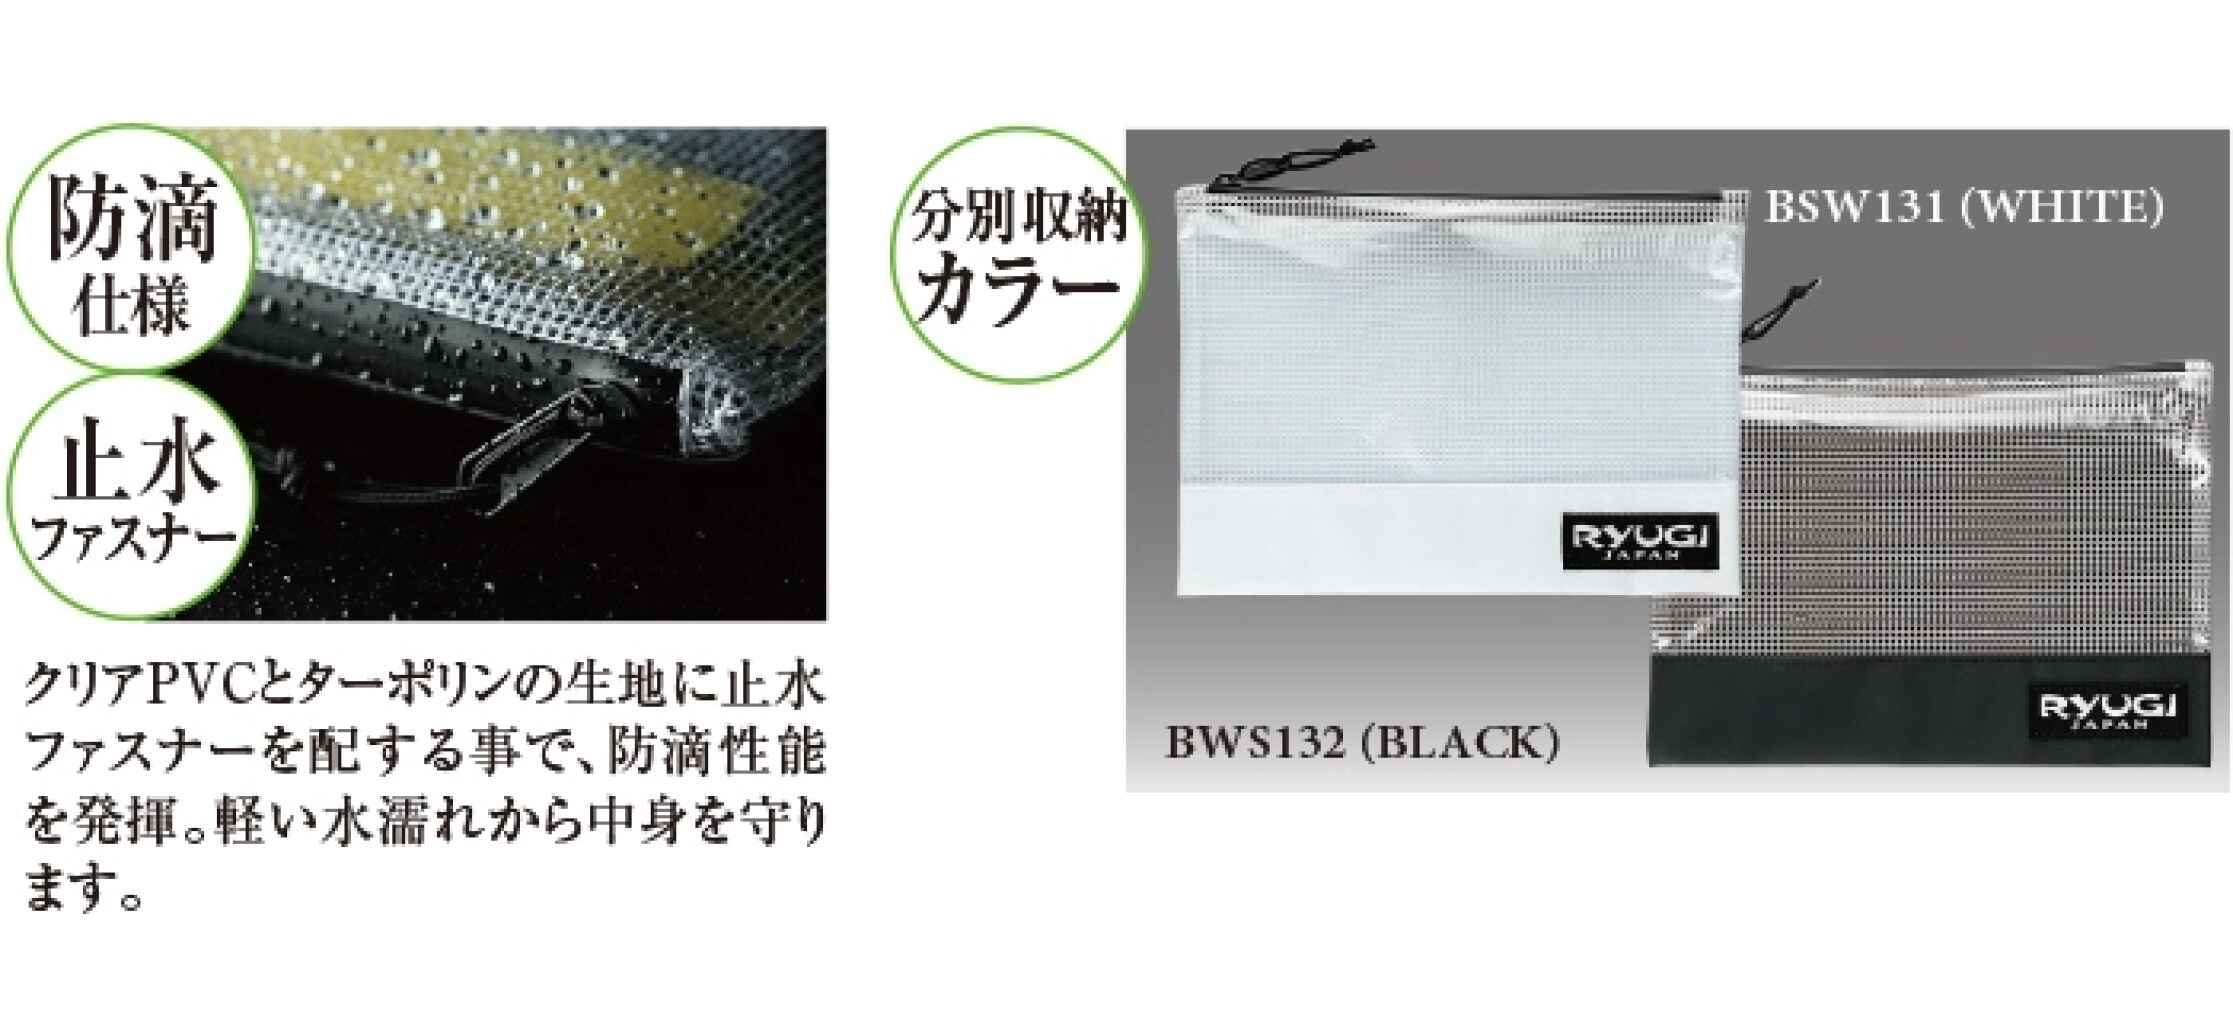 Ryugi Worm Stocker S Black